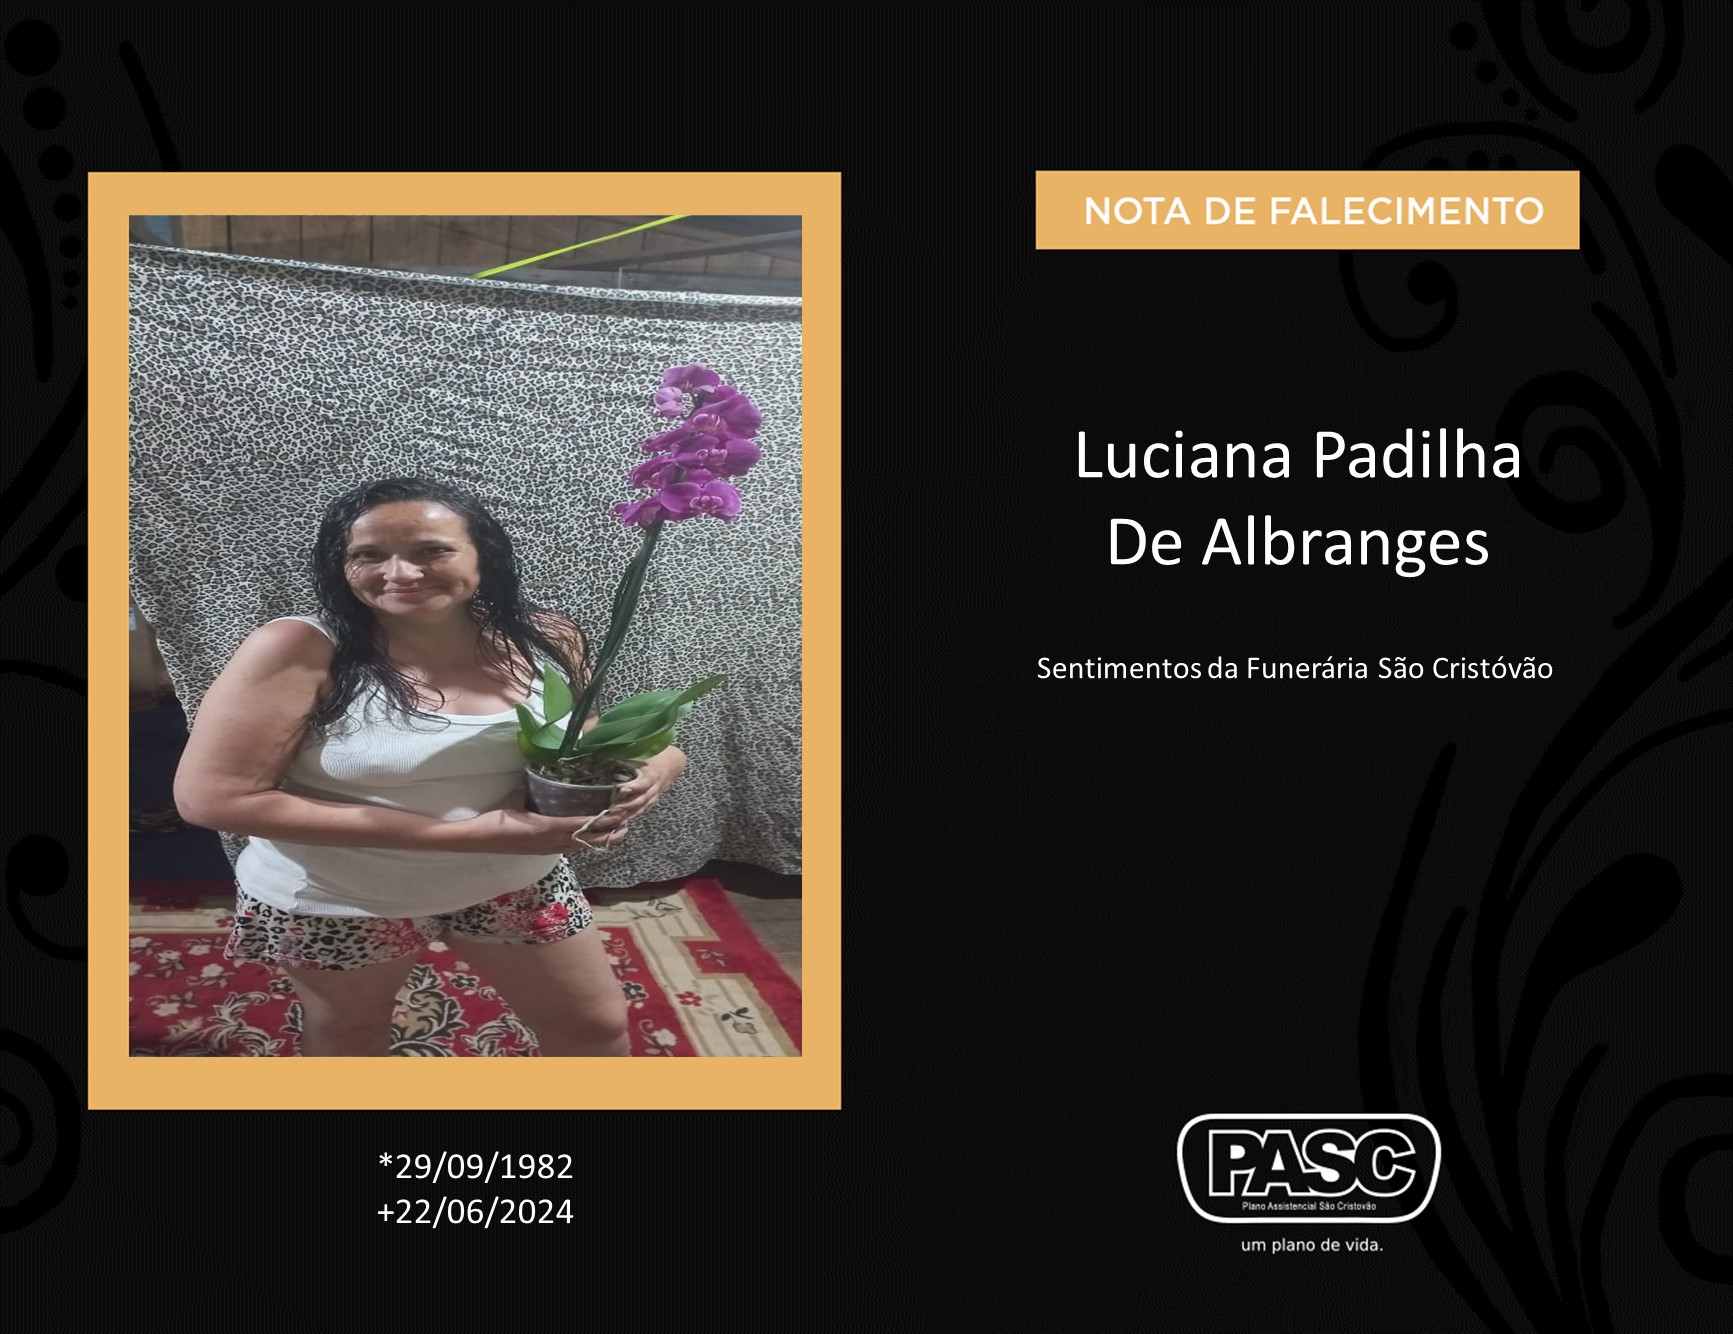 Familiares informam o falecimento de Luciana Padilha De Albranges